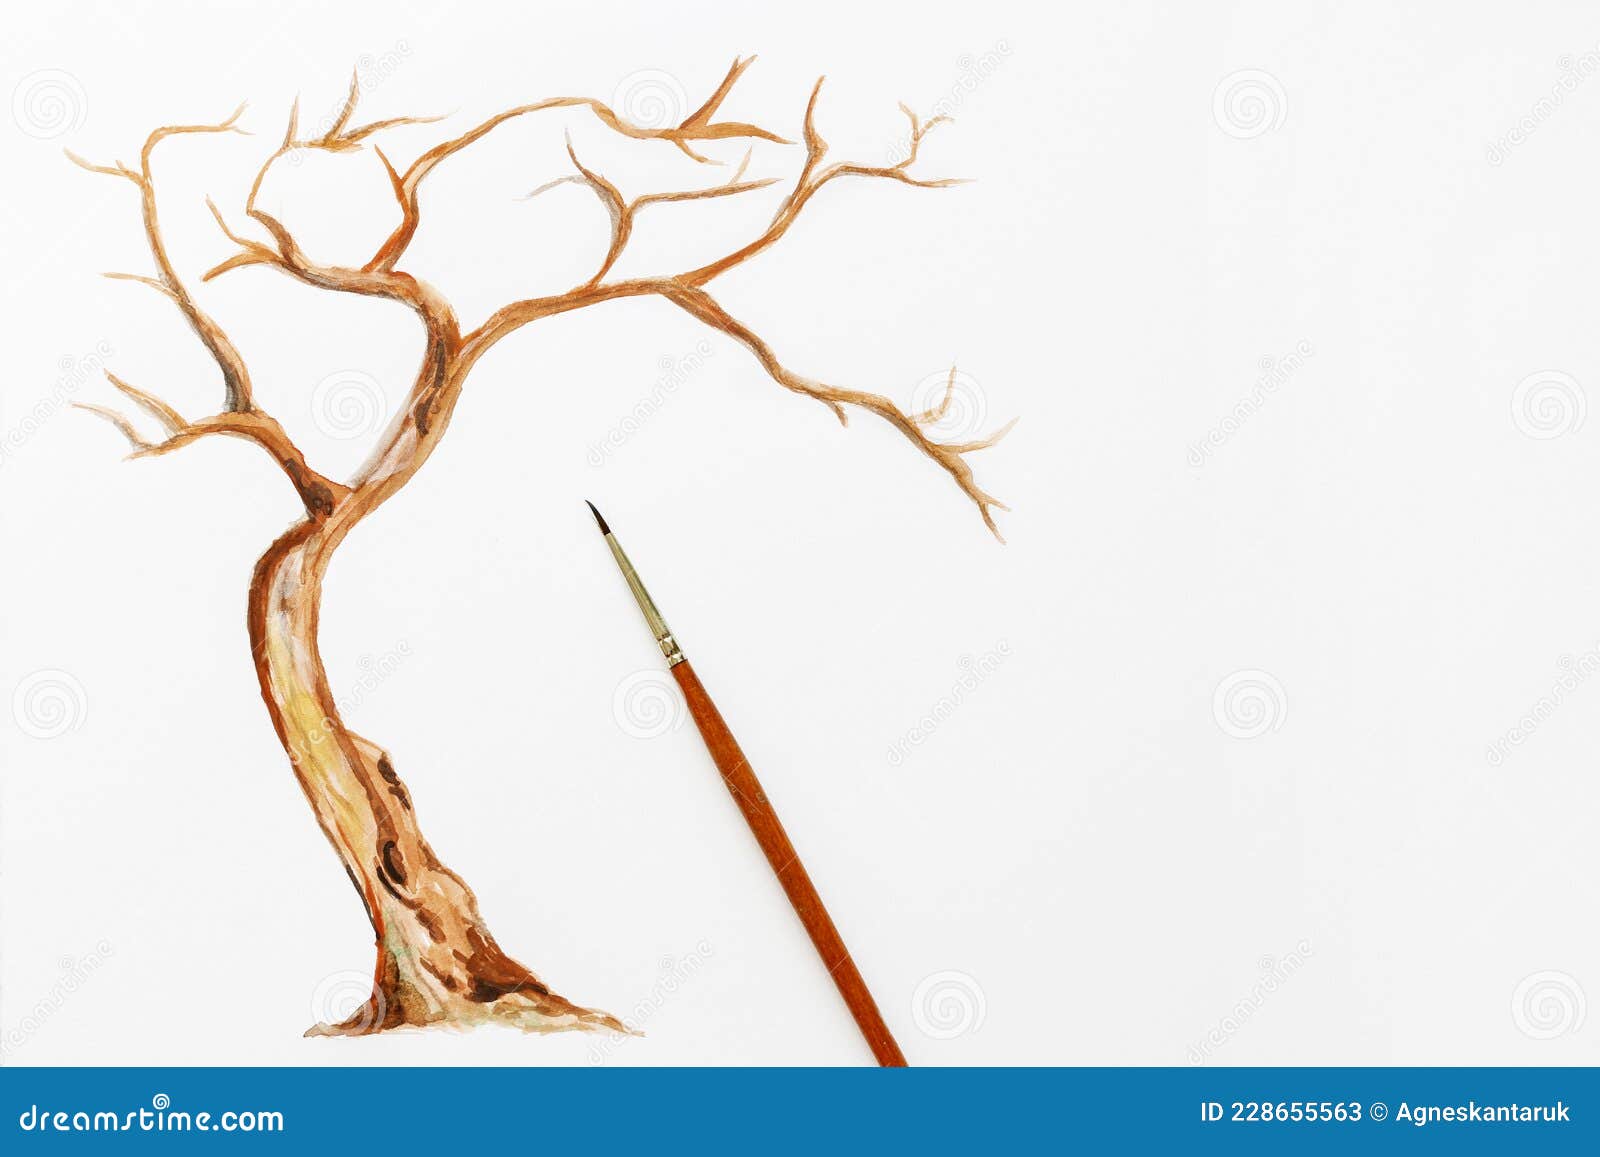 Cómo Pintar Un árbol Con Acuarelas. Paso Dos : Agregar Más Detalles Al  Tronco De árbol Imagen de archivo - Imagen de utensilios, superficie:  228655563